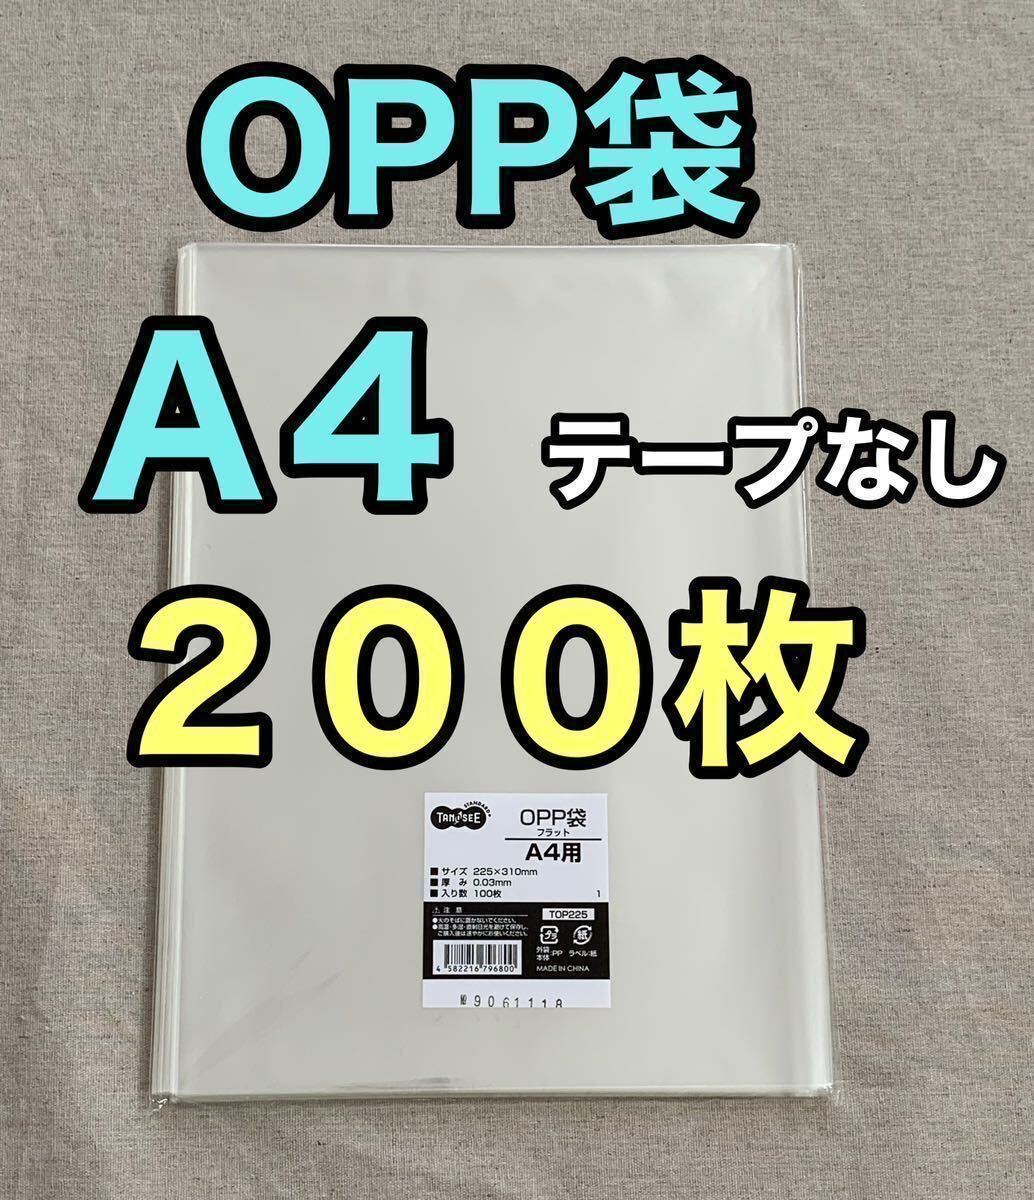 OPP袋 A4 200枚 テープなし 梱包資材 ラッピング 透明袋 クリアパック クリスタルパック ビニール袋 包装 梱包材 OPP 袋 DMの画像1